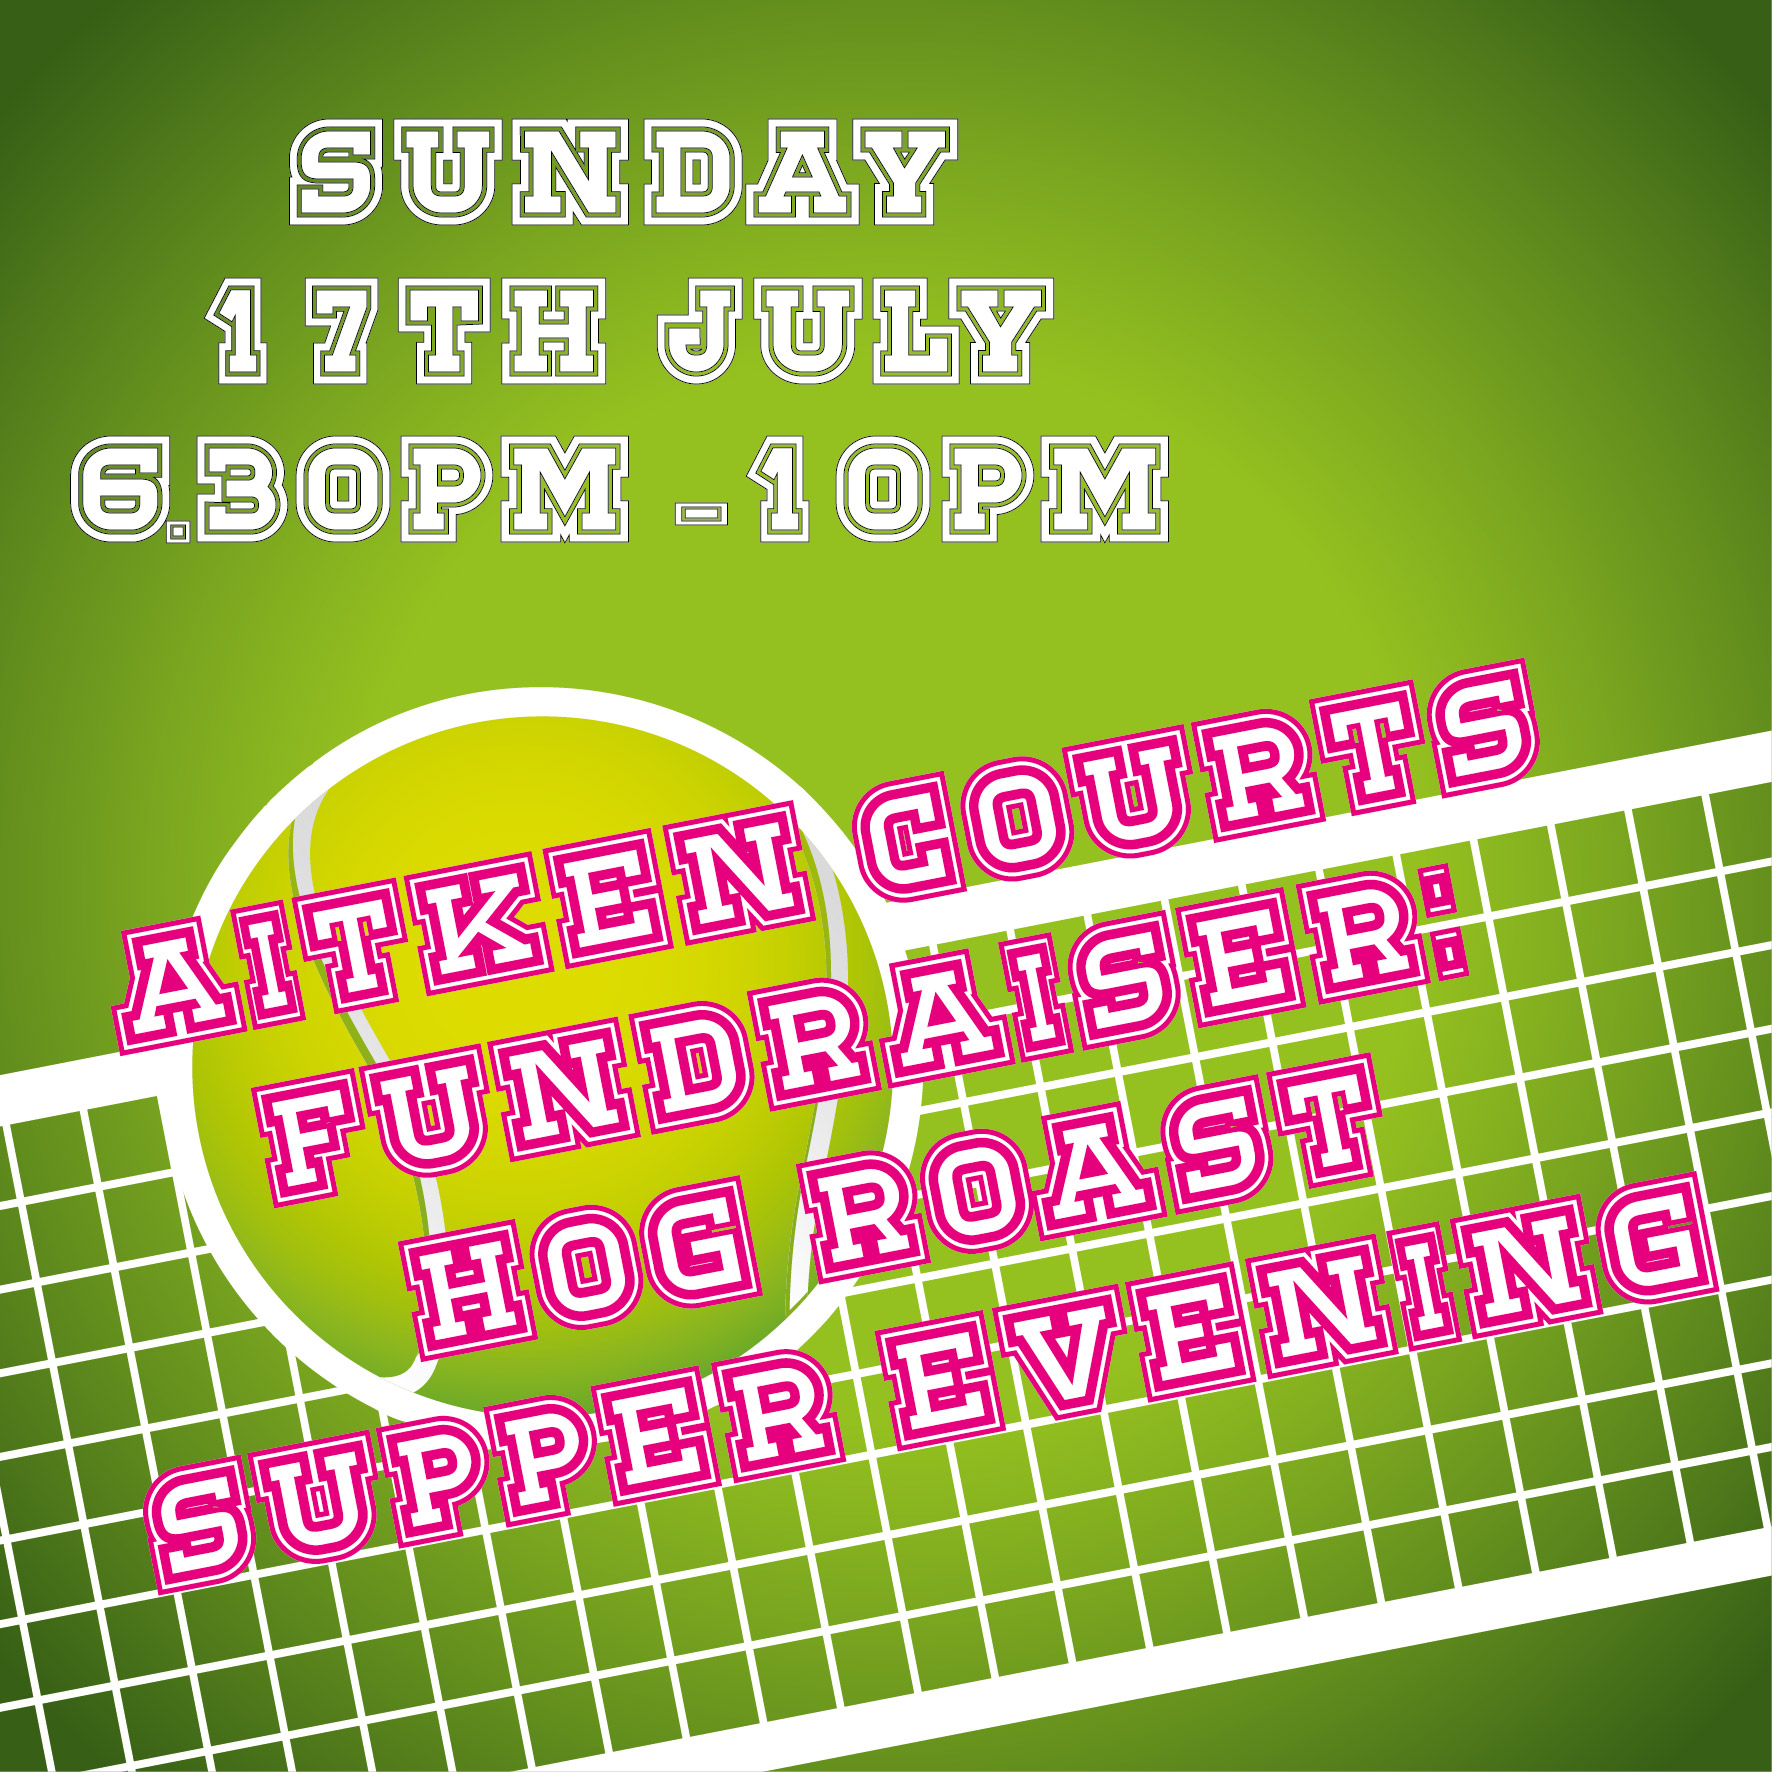 Aitken Tennis Courts Hog Roast Supper 2022 (fundraiser)